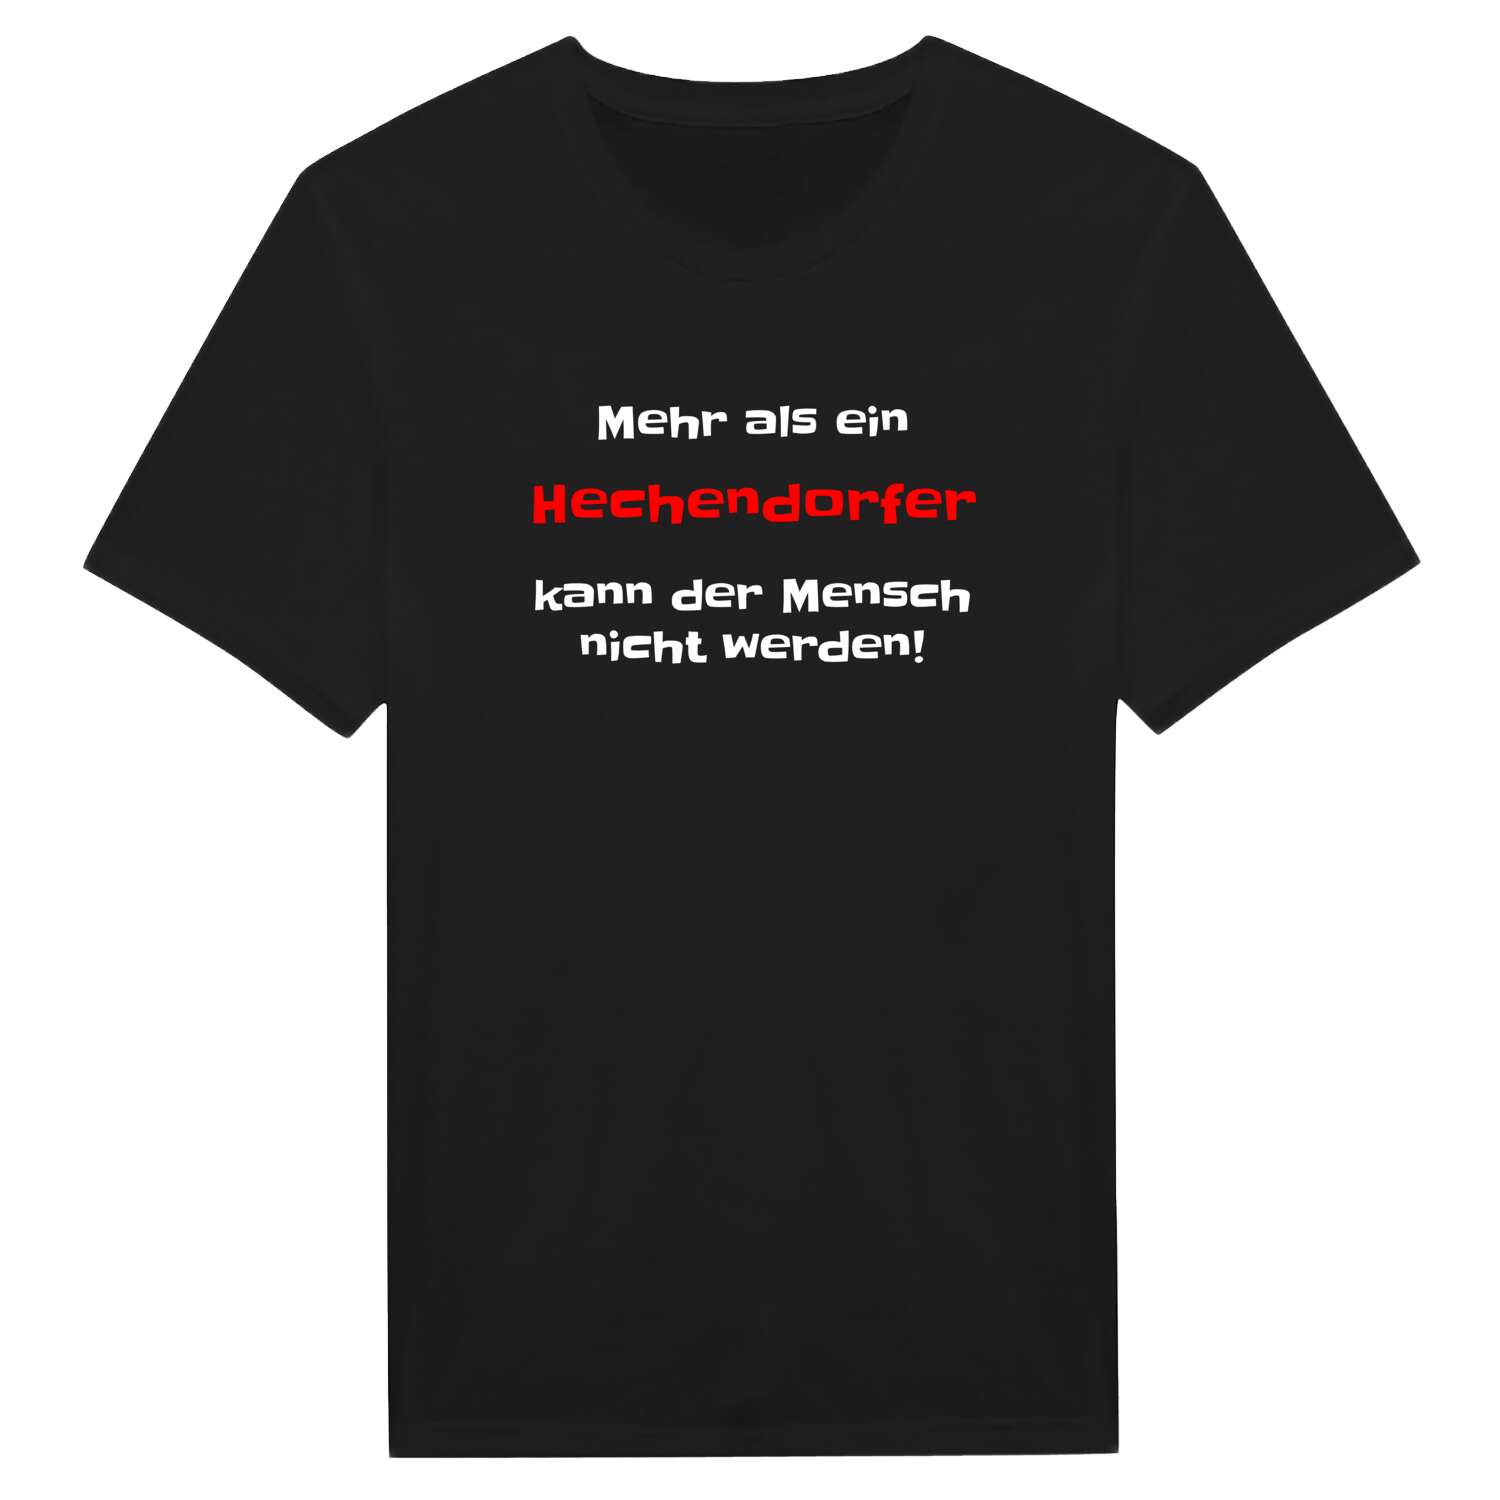 Hechendorf T-Shirt »Mehr als ein«